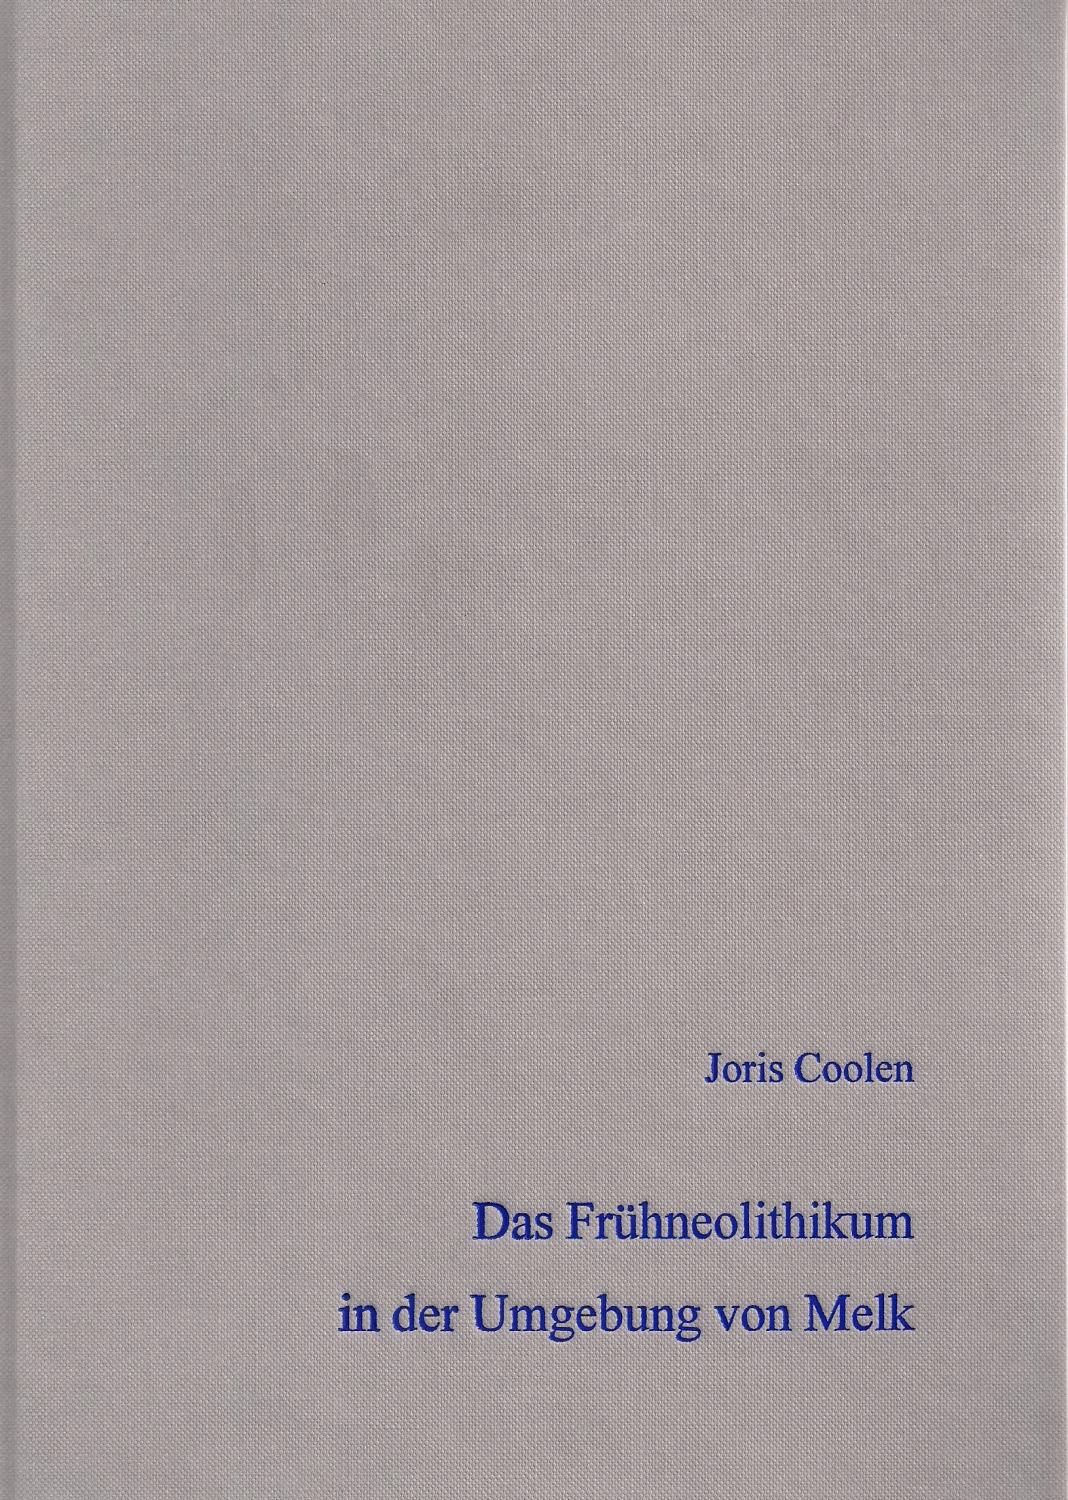 Band 80: Das Frühneolithikum in der Umgebung von Melk, Niederöstereich - Joris Coolen --- Herausgegeben von Hans-Jürgen Beier (Verlag Beier & Beran)